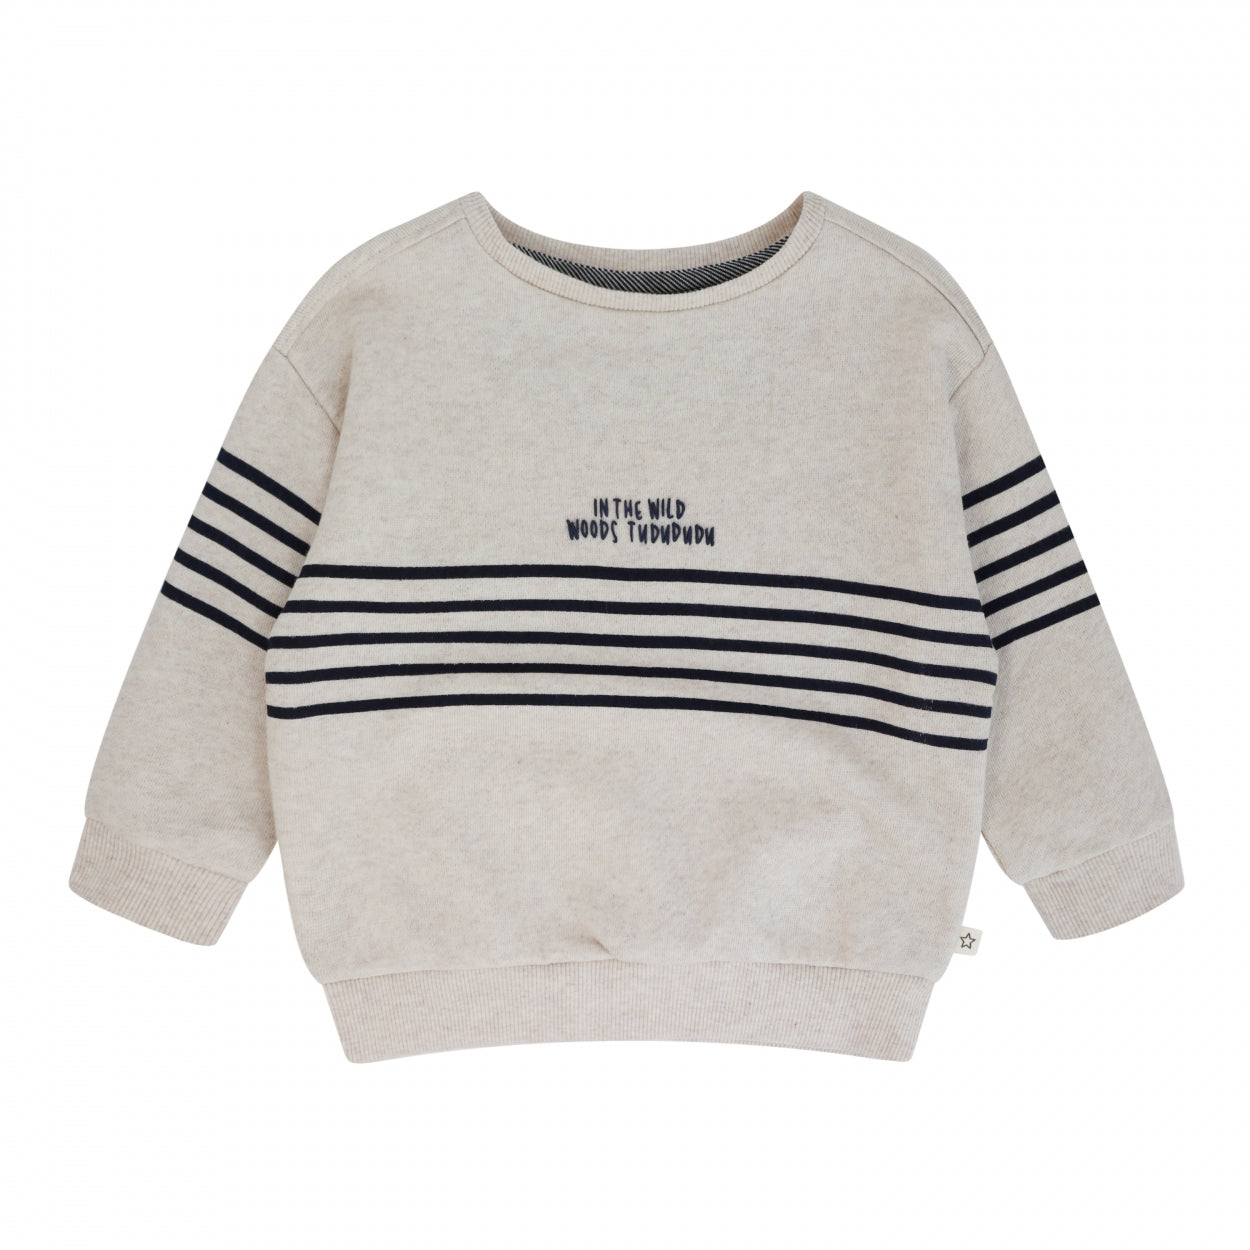 Jongens Sweater Melange | Gael van Your Wishes in de kleur Honeycomb in maat 92.